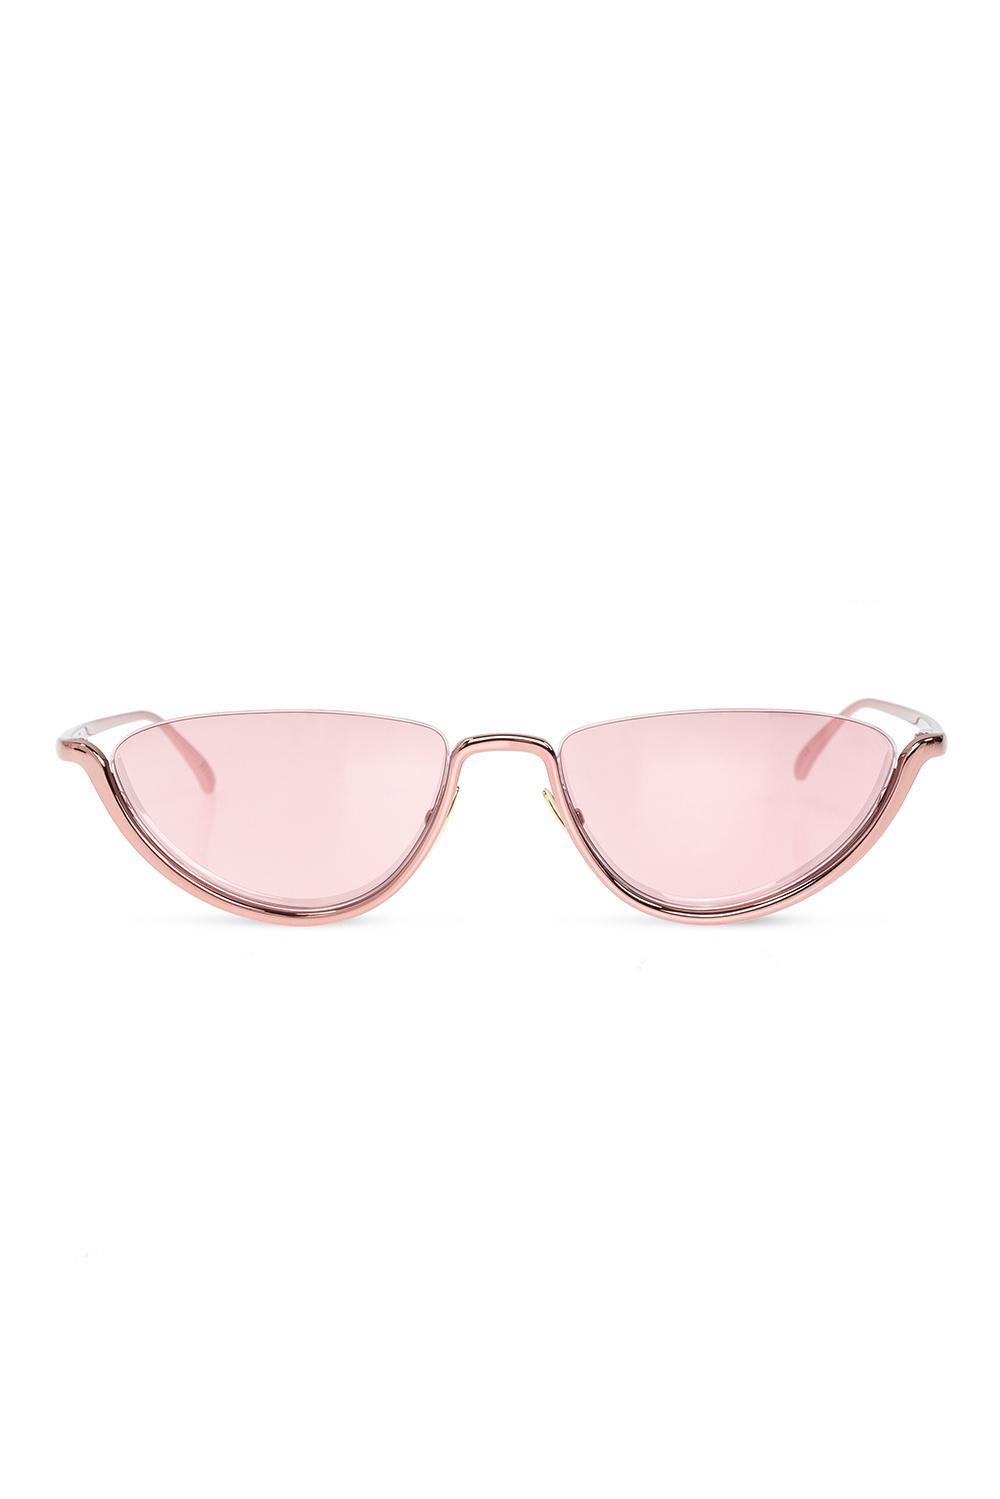 Bottega Veneta Eyewear Mirror Sunglasses